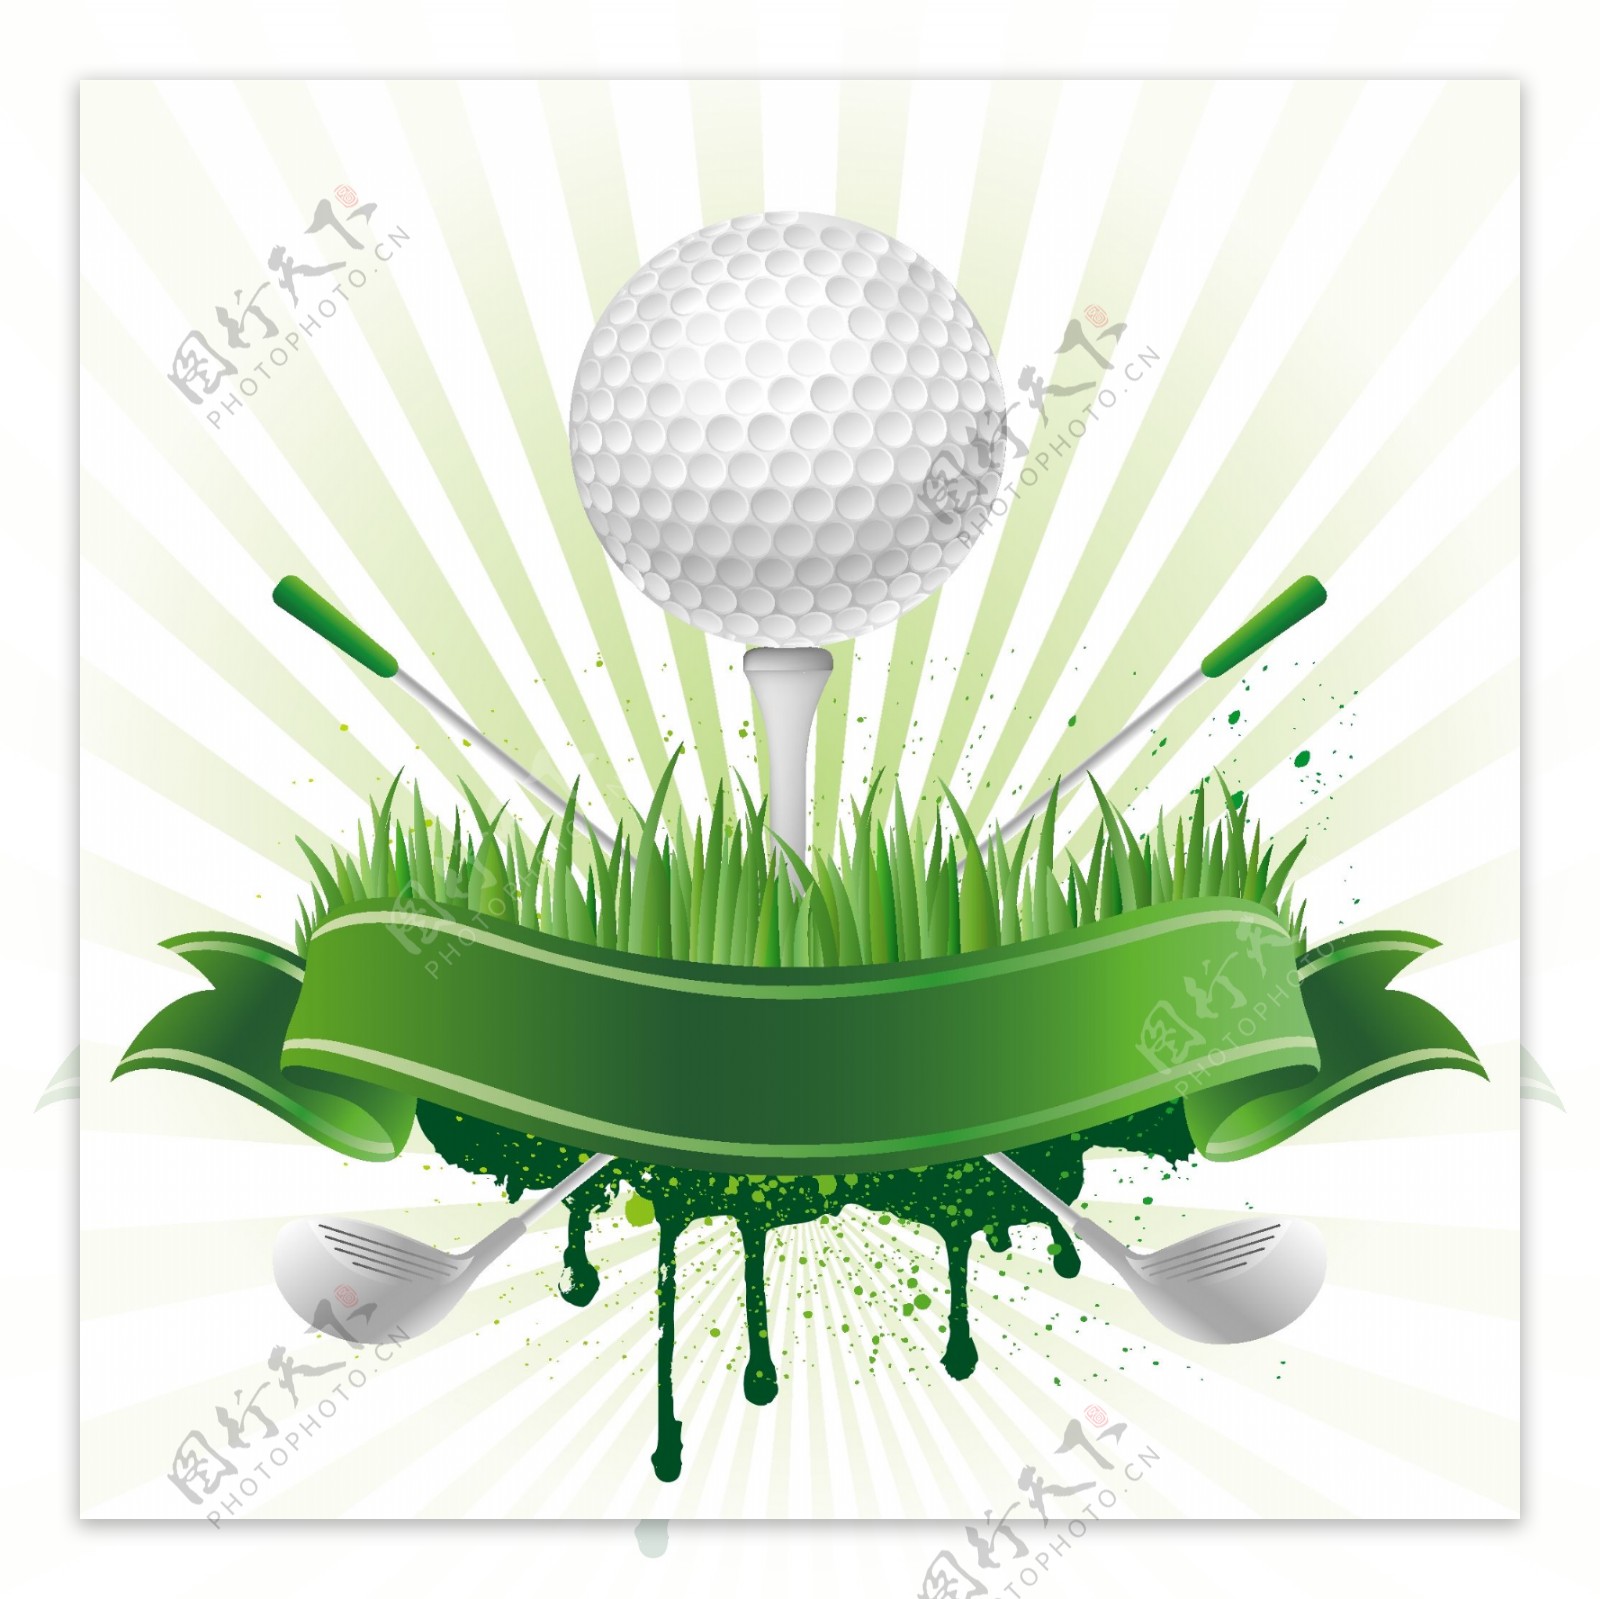 高尔夫球丝带图形标志图片